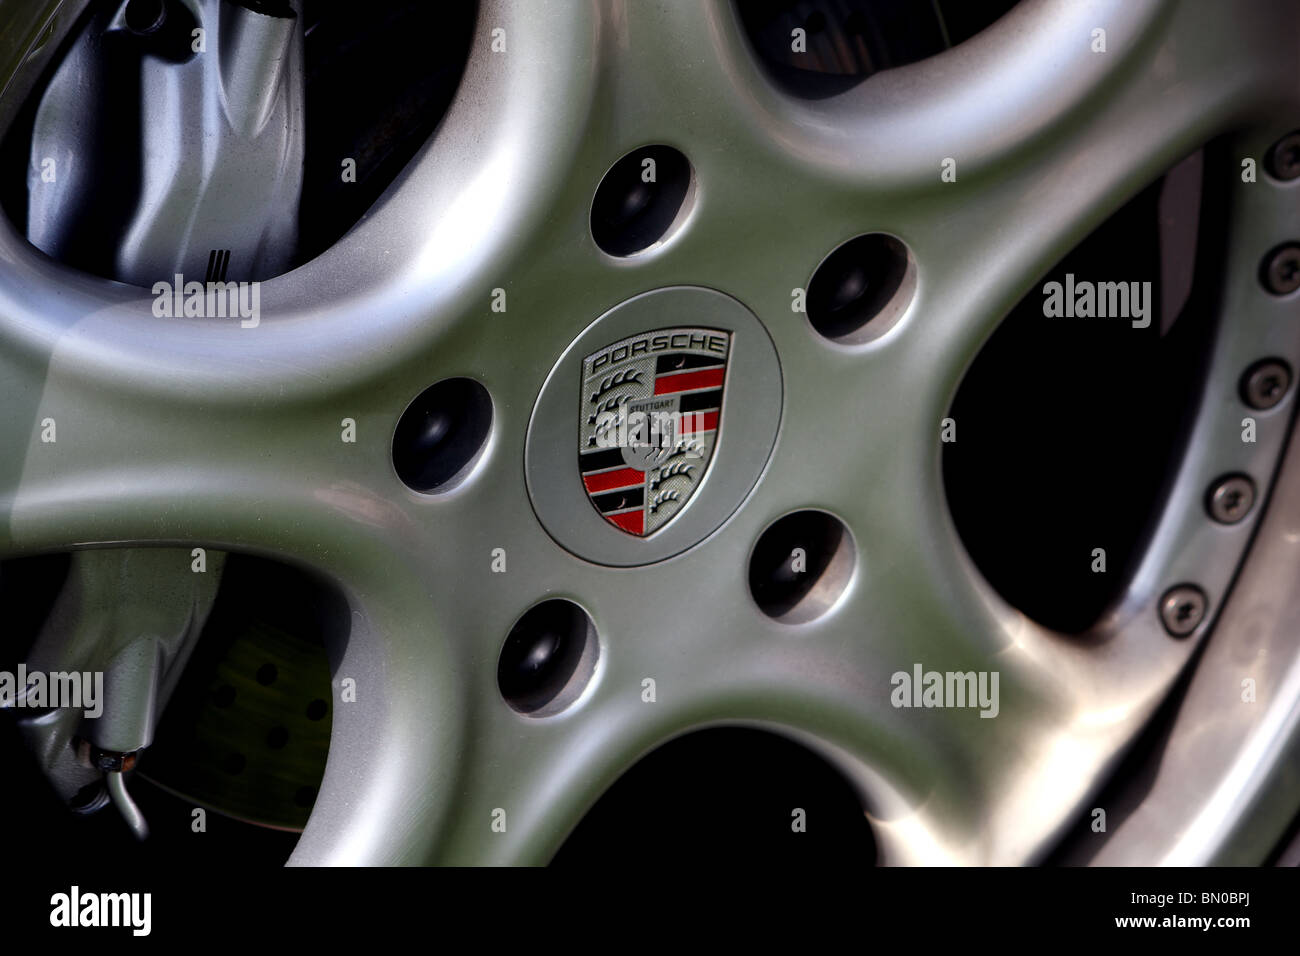 An alloy wheel on the Porsche super sports car Stock Photo